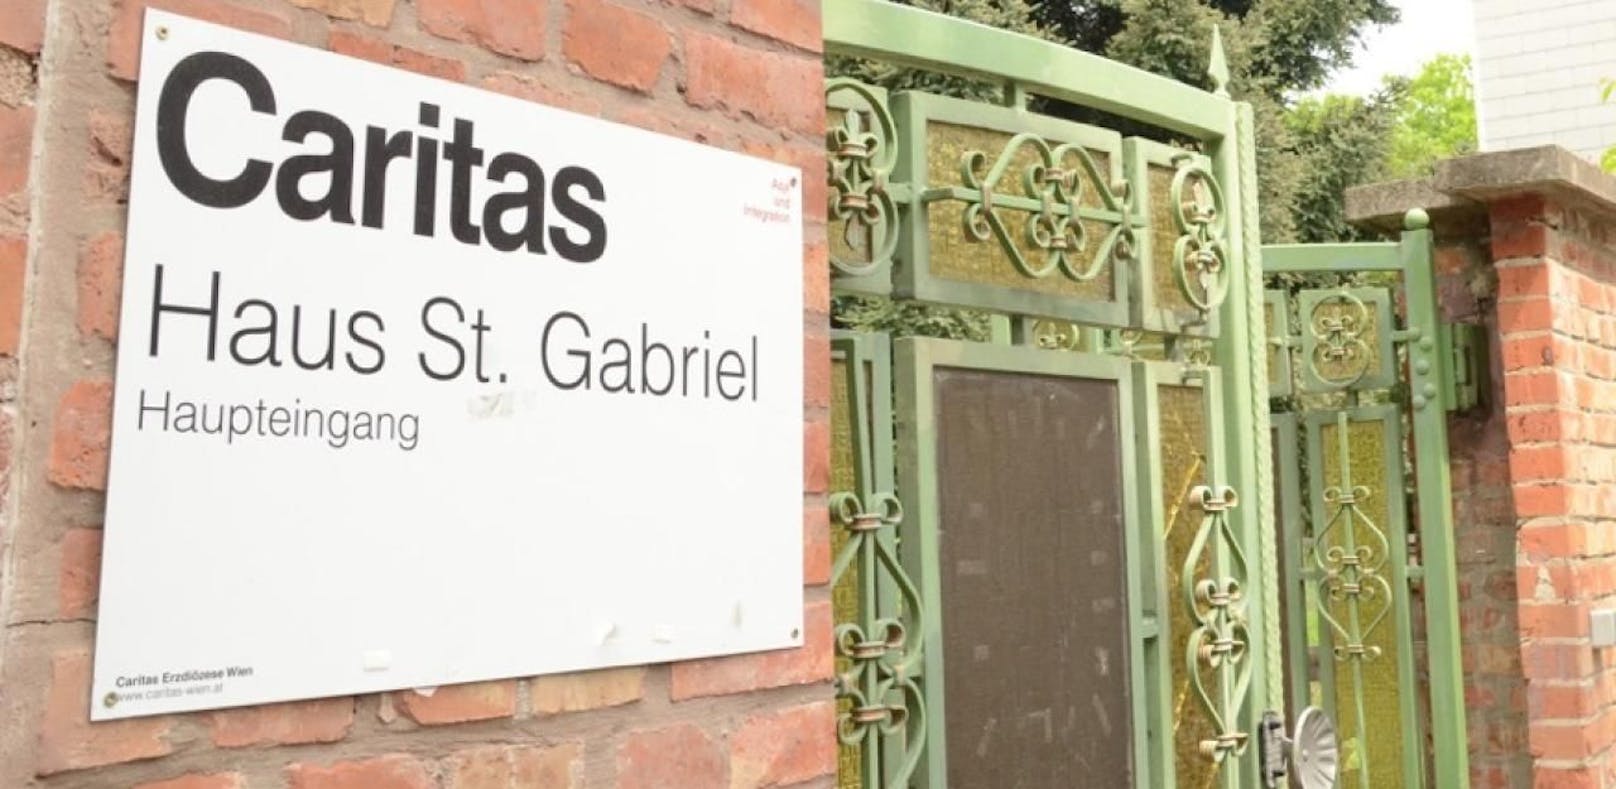 Ein Caritas-Heim. (Symbolbild)